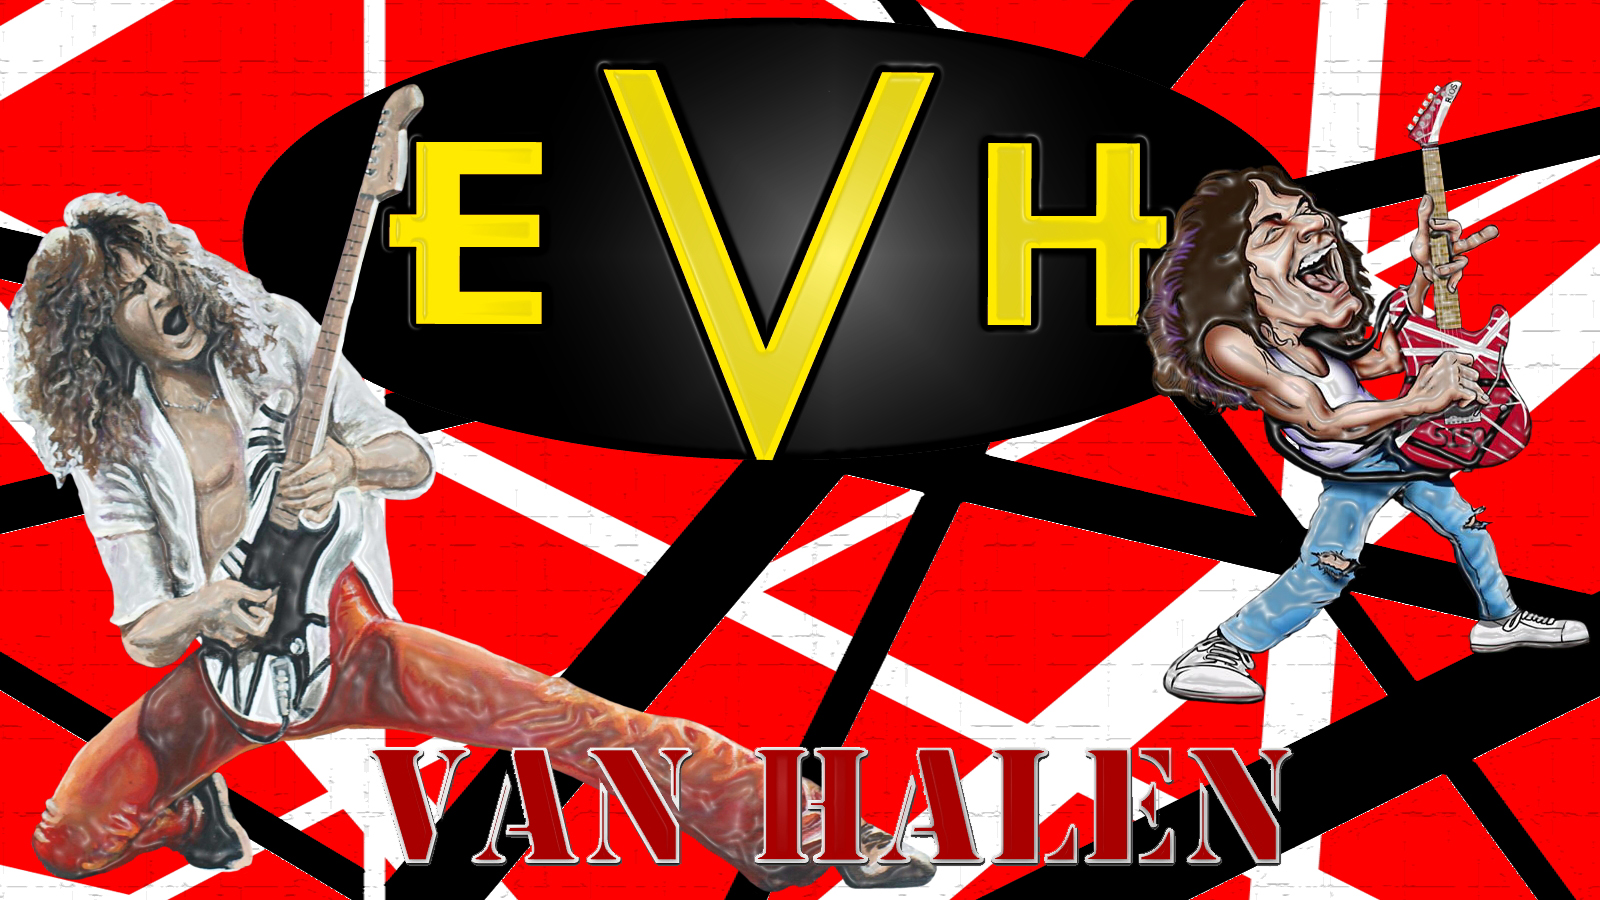 Eddie Van Halen - Eddie Van Halen Hd , HD Wallpaper & Backgrounds